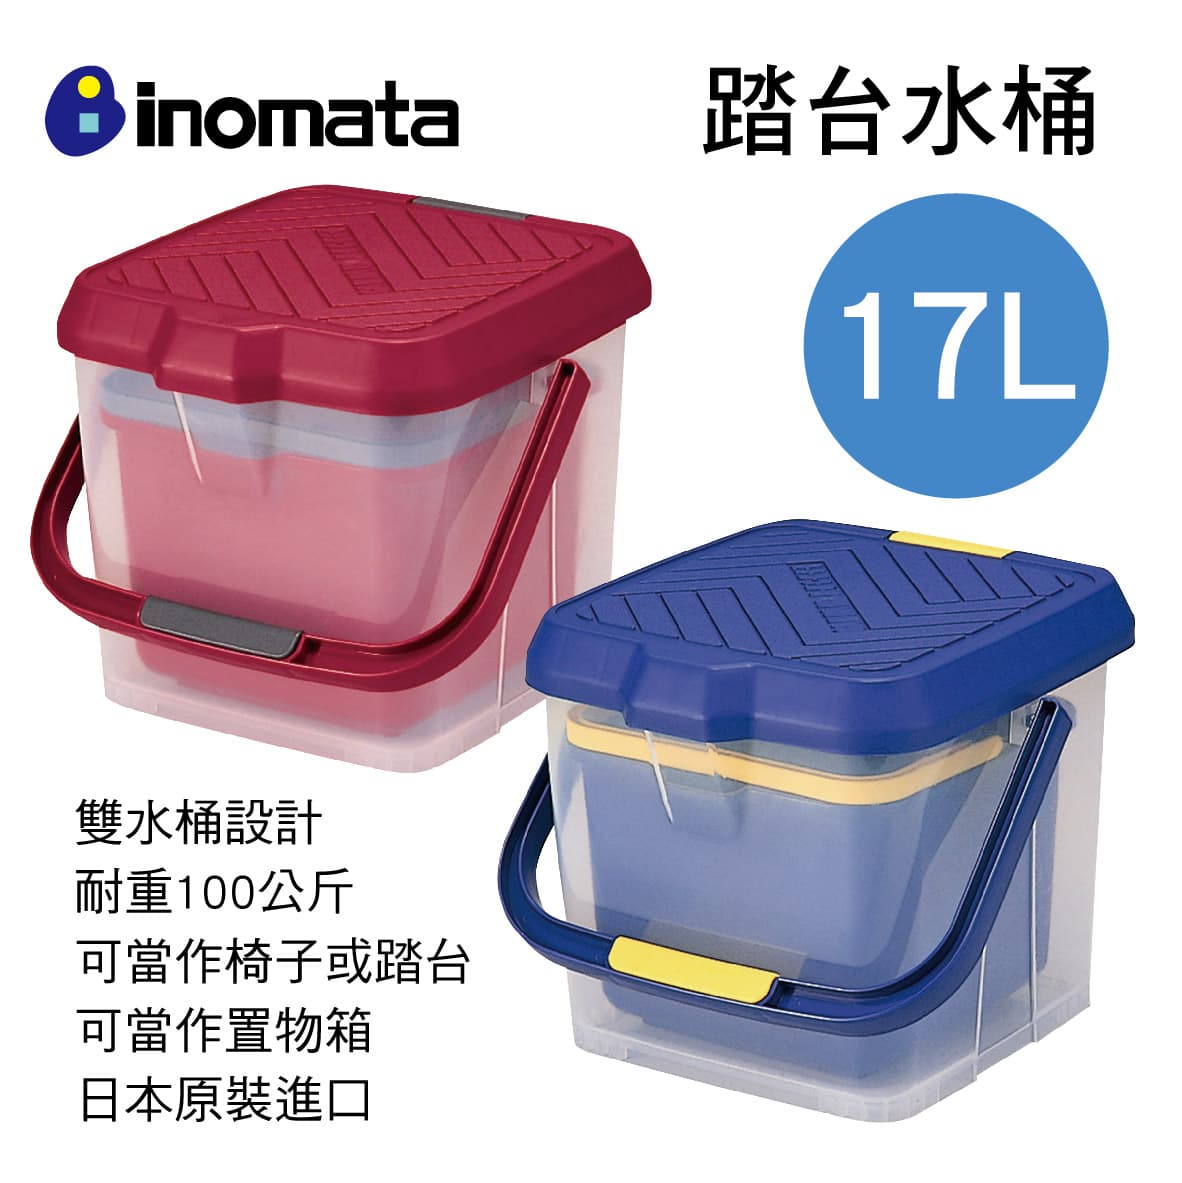 真便宜 日本inomata 多功能踏台水桶17L(紅/藍)